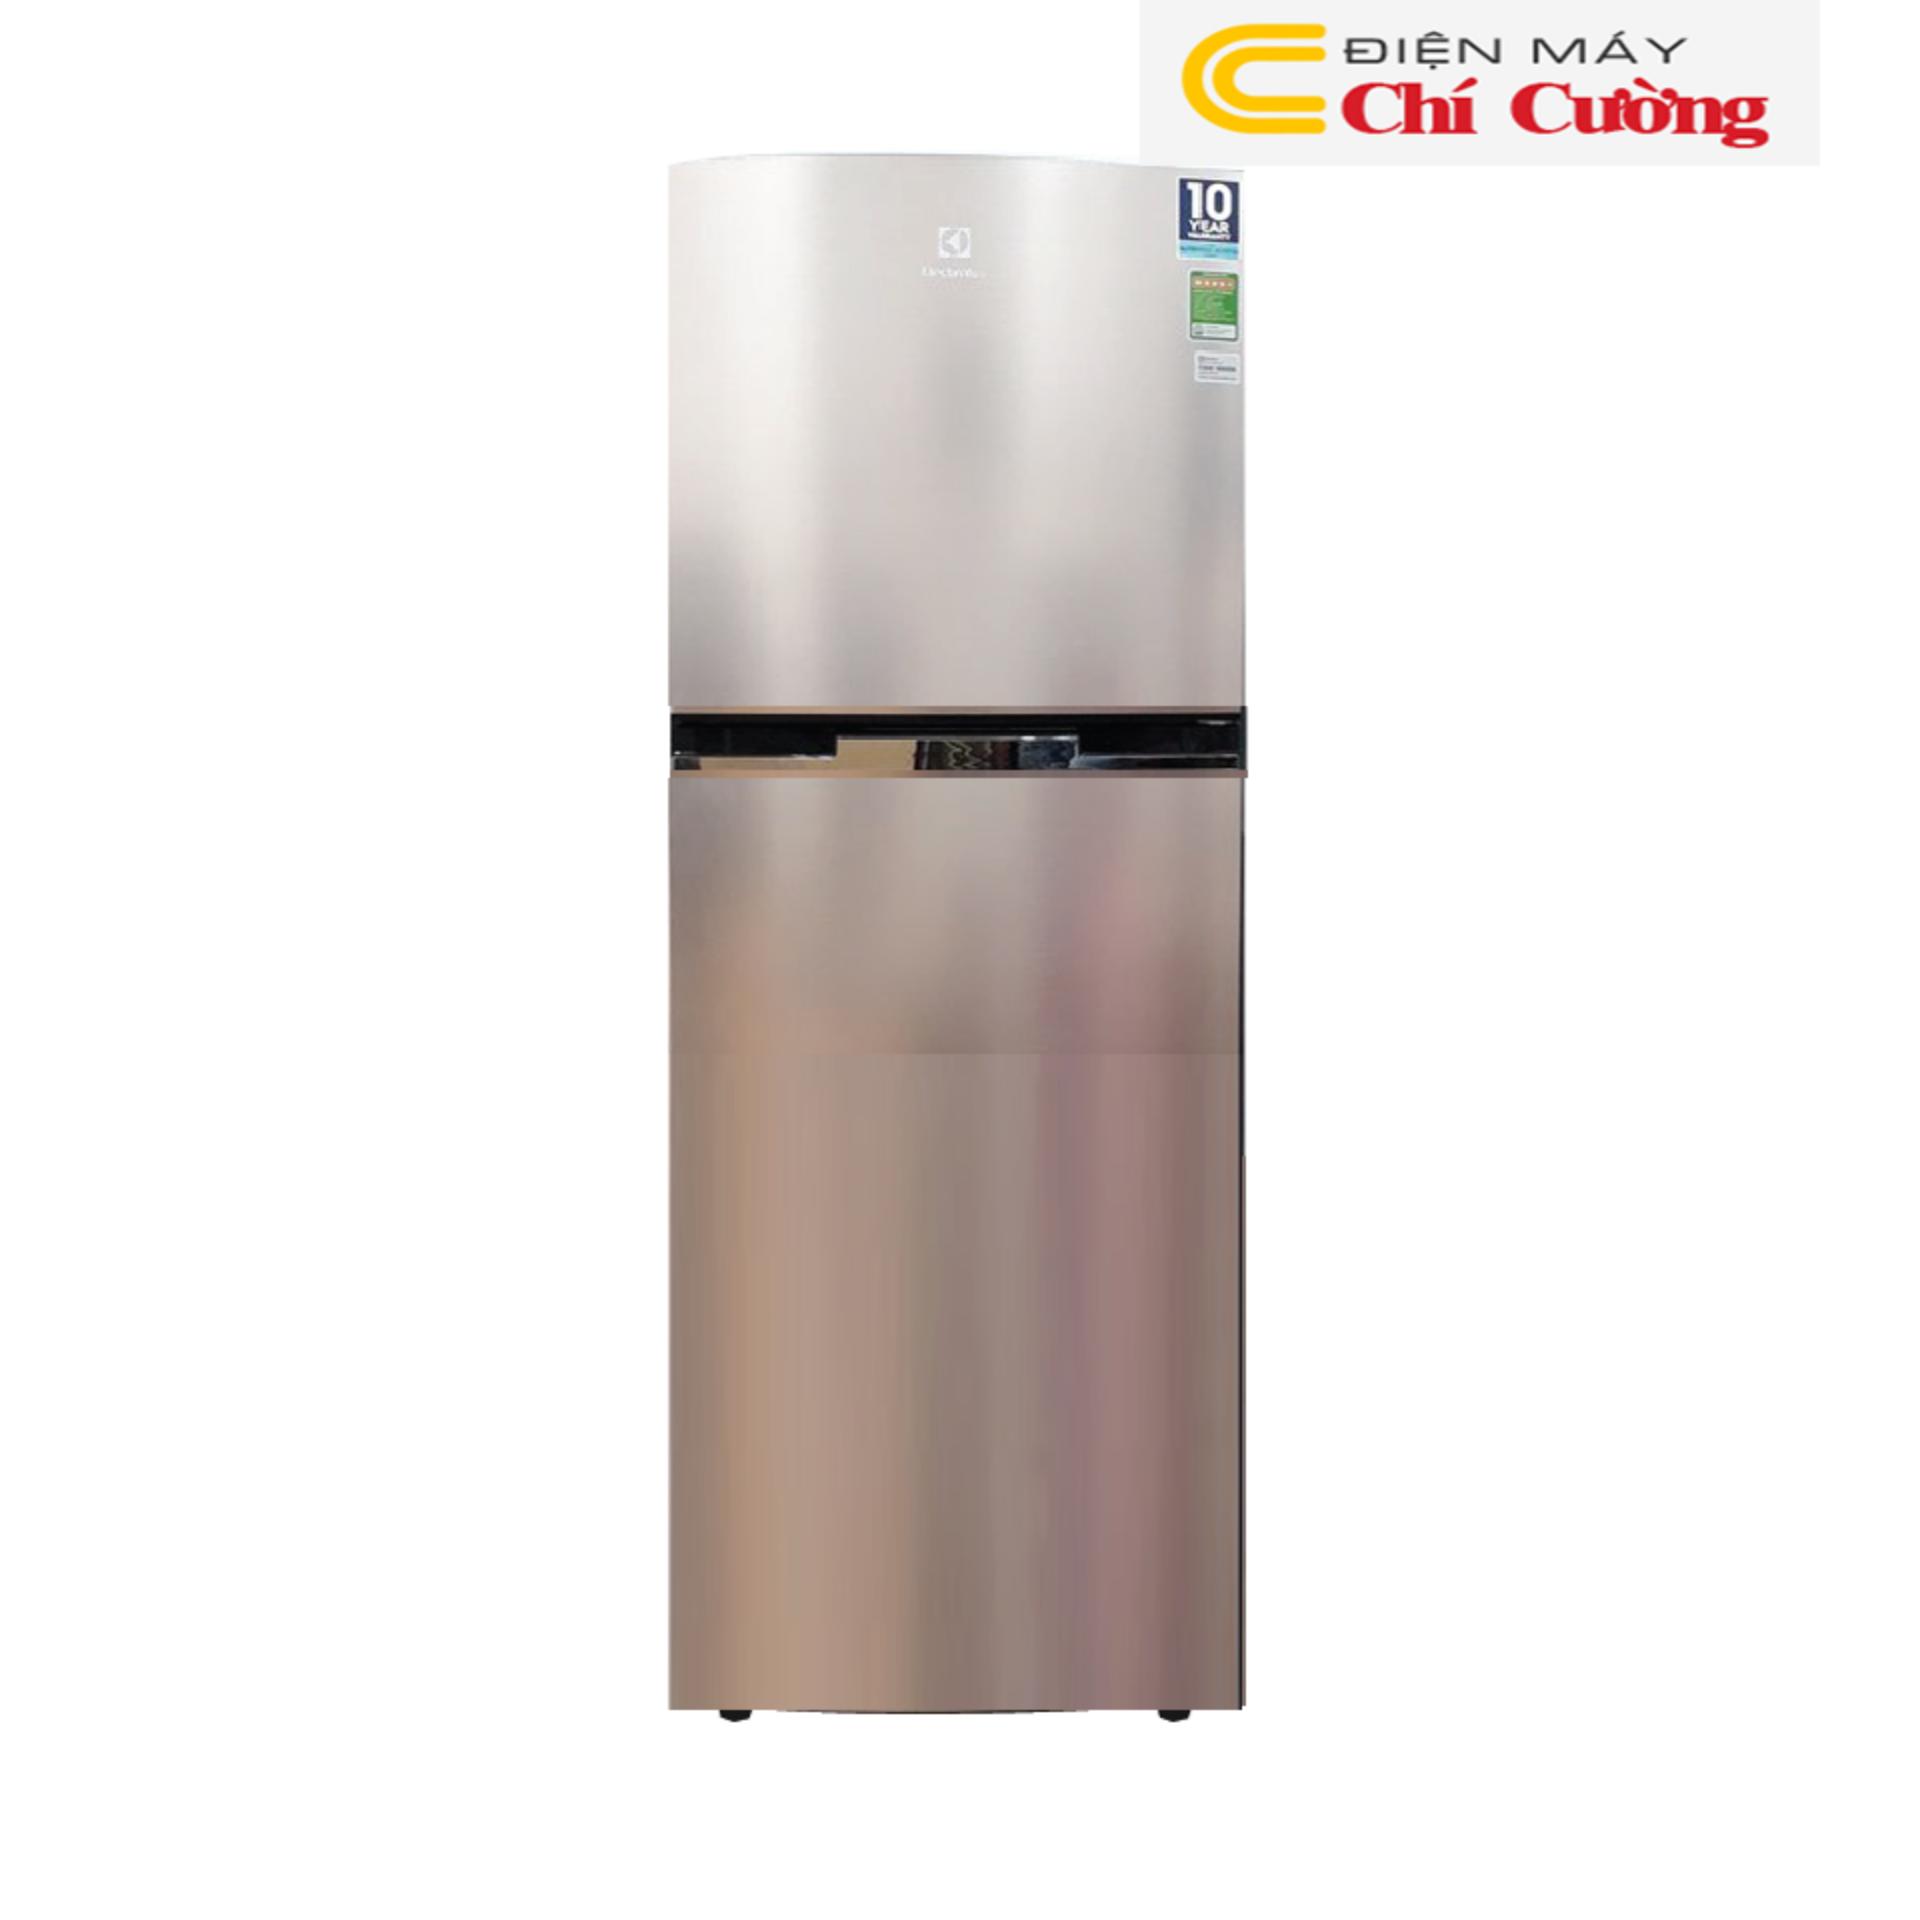 Tủ lạnh Electrolux ETB4602GA 460 Lít 2 cửa Inverter (Vàng đồng)